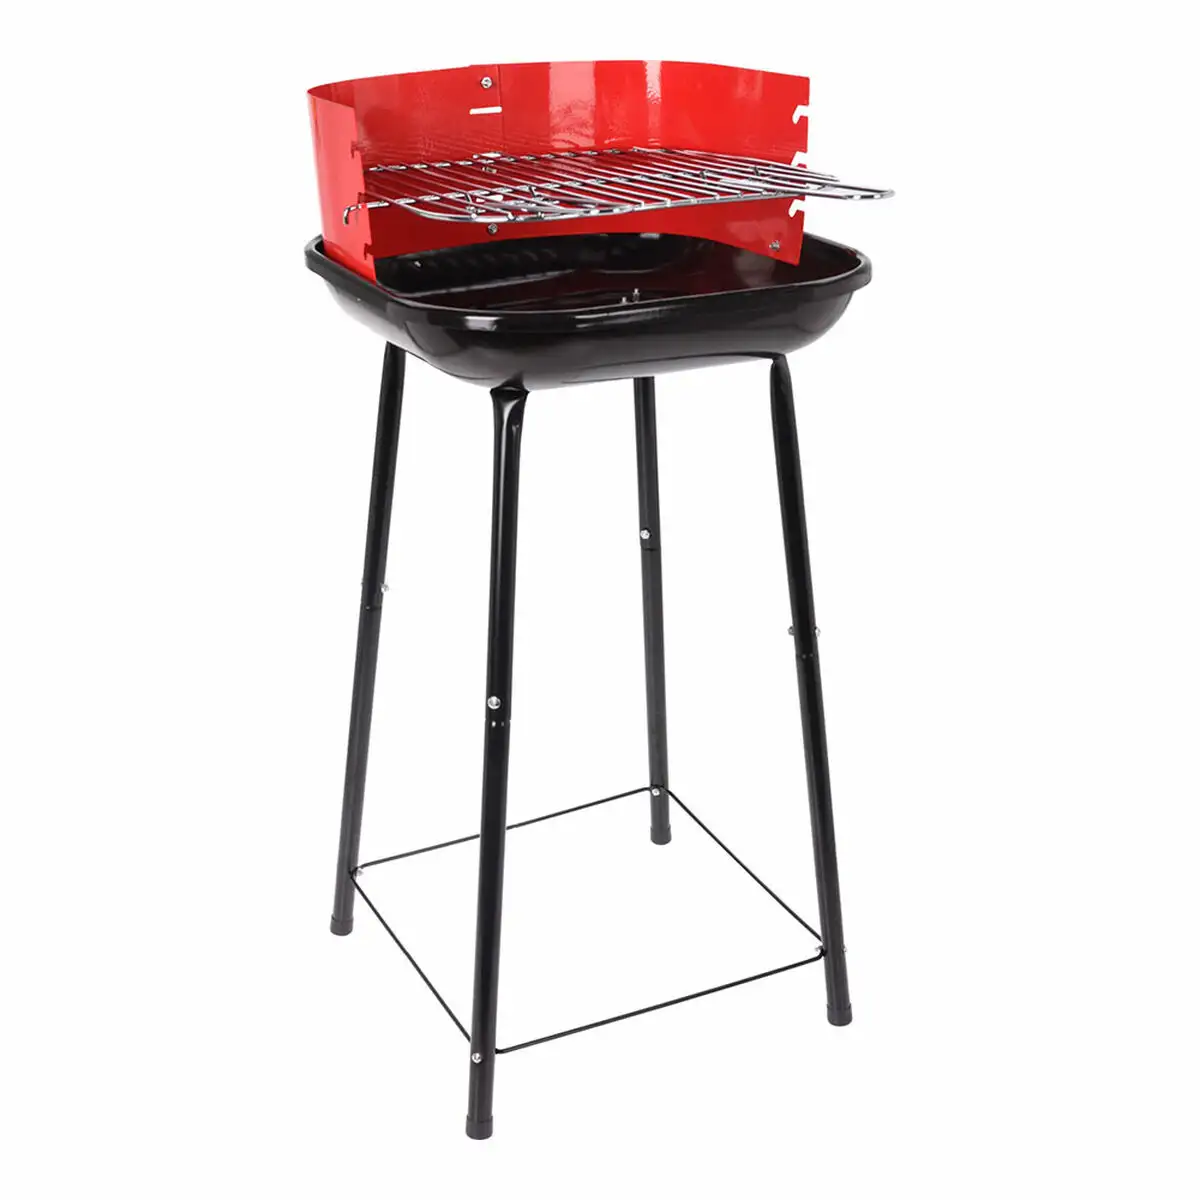 Barbecue a charbon sur pied grill 41 x 41 x 74 cm rouge noir_4417. DIAYTAR SENEGAL - Votre Plateforme Shopping de Confiance. Naviguez à travers nos rayons et choisissez des produits fiables qui répondent à vos besoins quotidiens.